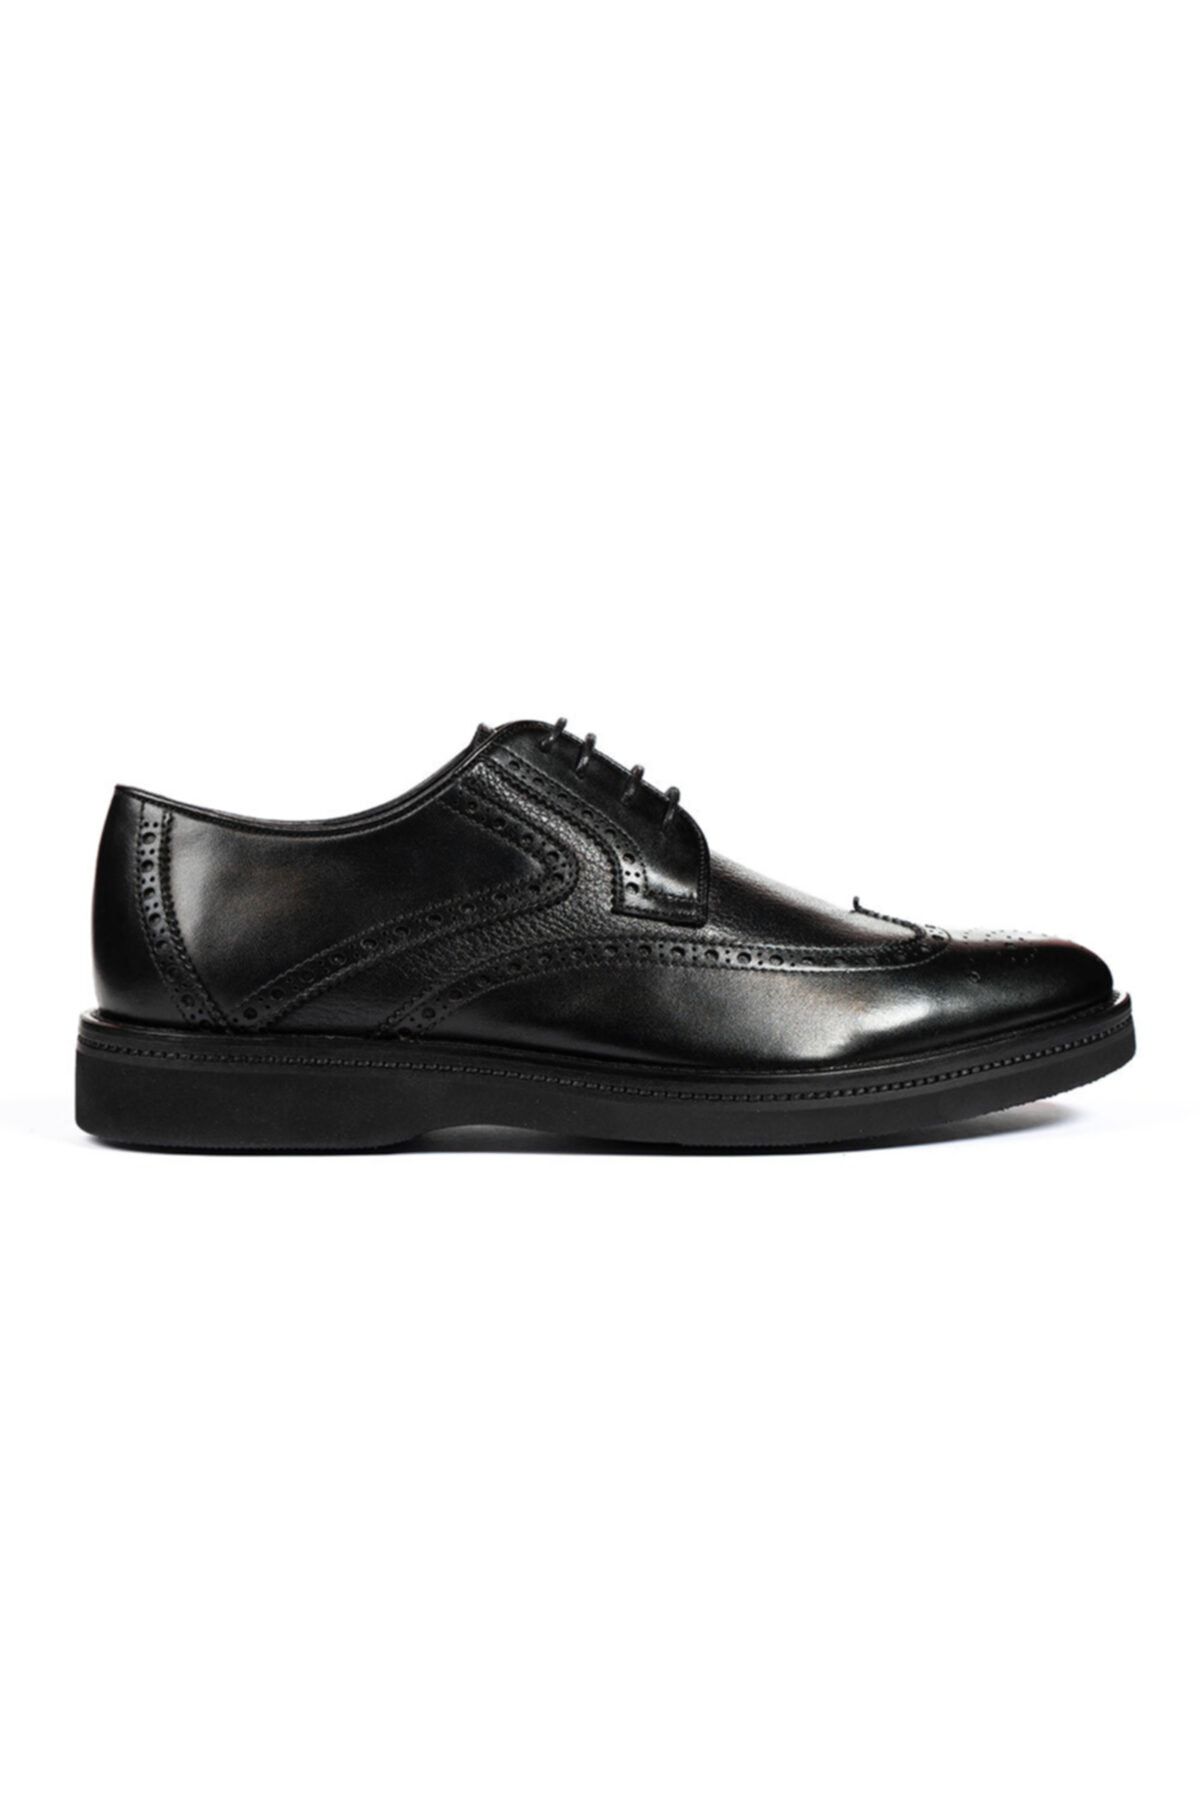 Greyder Klasik Erkek Ayakkabı Siyah Floter 1k1ka67747